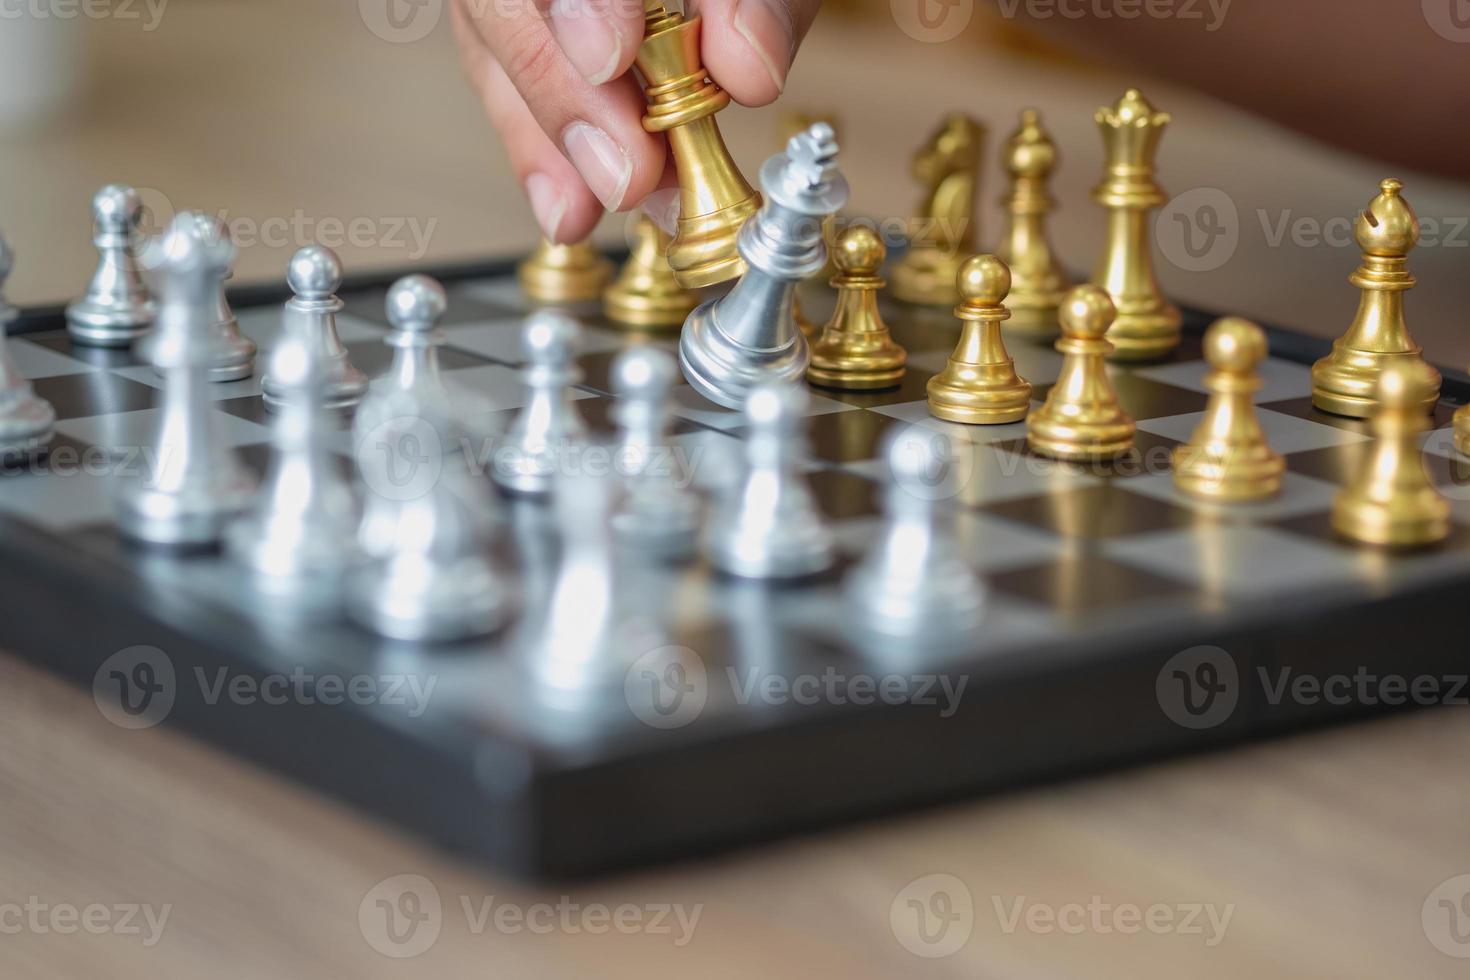 Oldmarketing - Se sua empresa fosse um tabuleiro de xadrez, e as peças  fossem seus clientes, qual seria sua próxima jogada? ♟Não se ganha o jogo  sem estratégia. ♟Suas estratégias, seja para